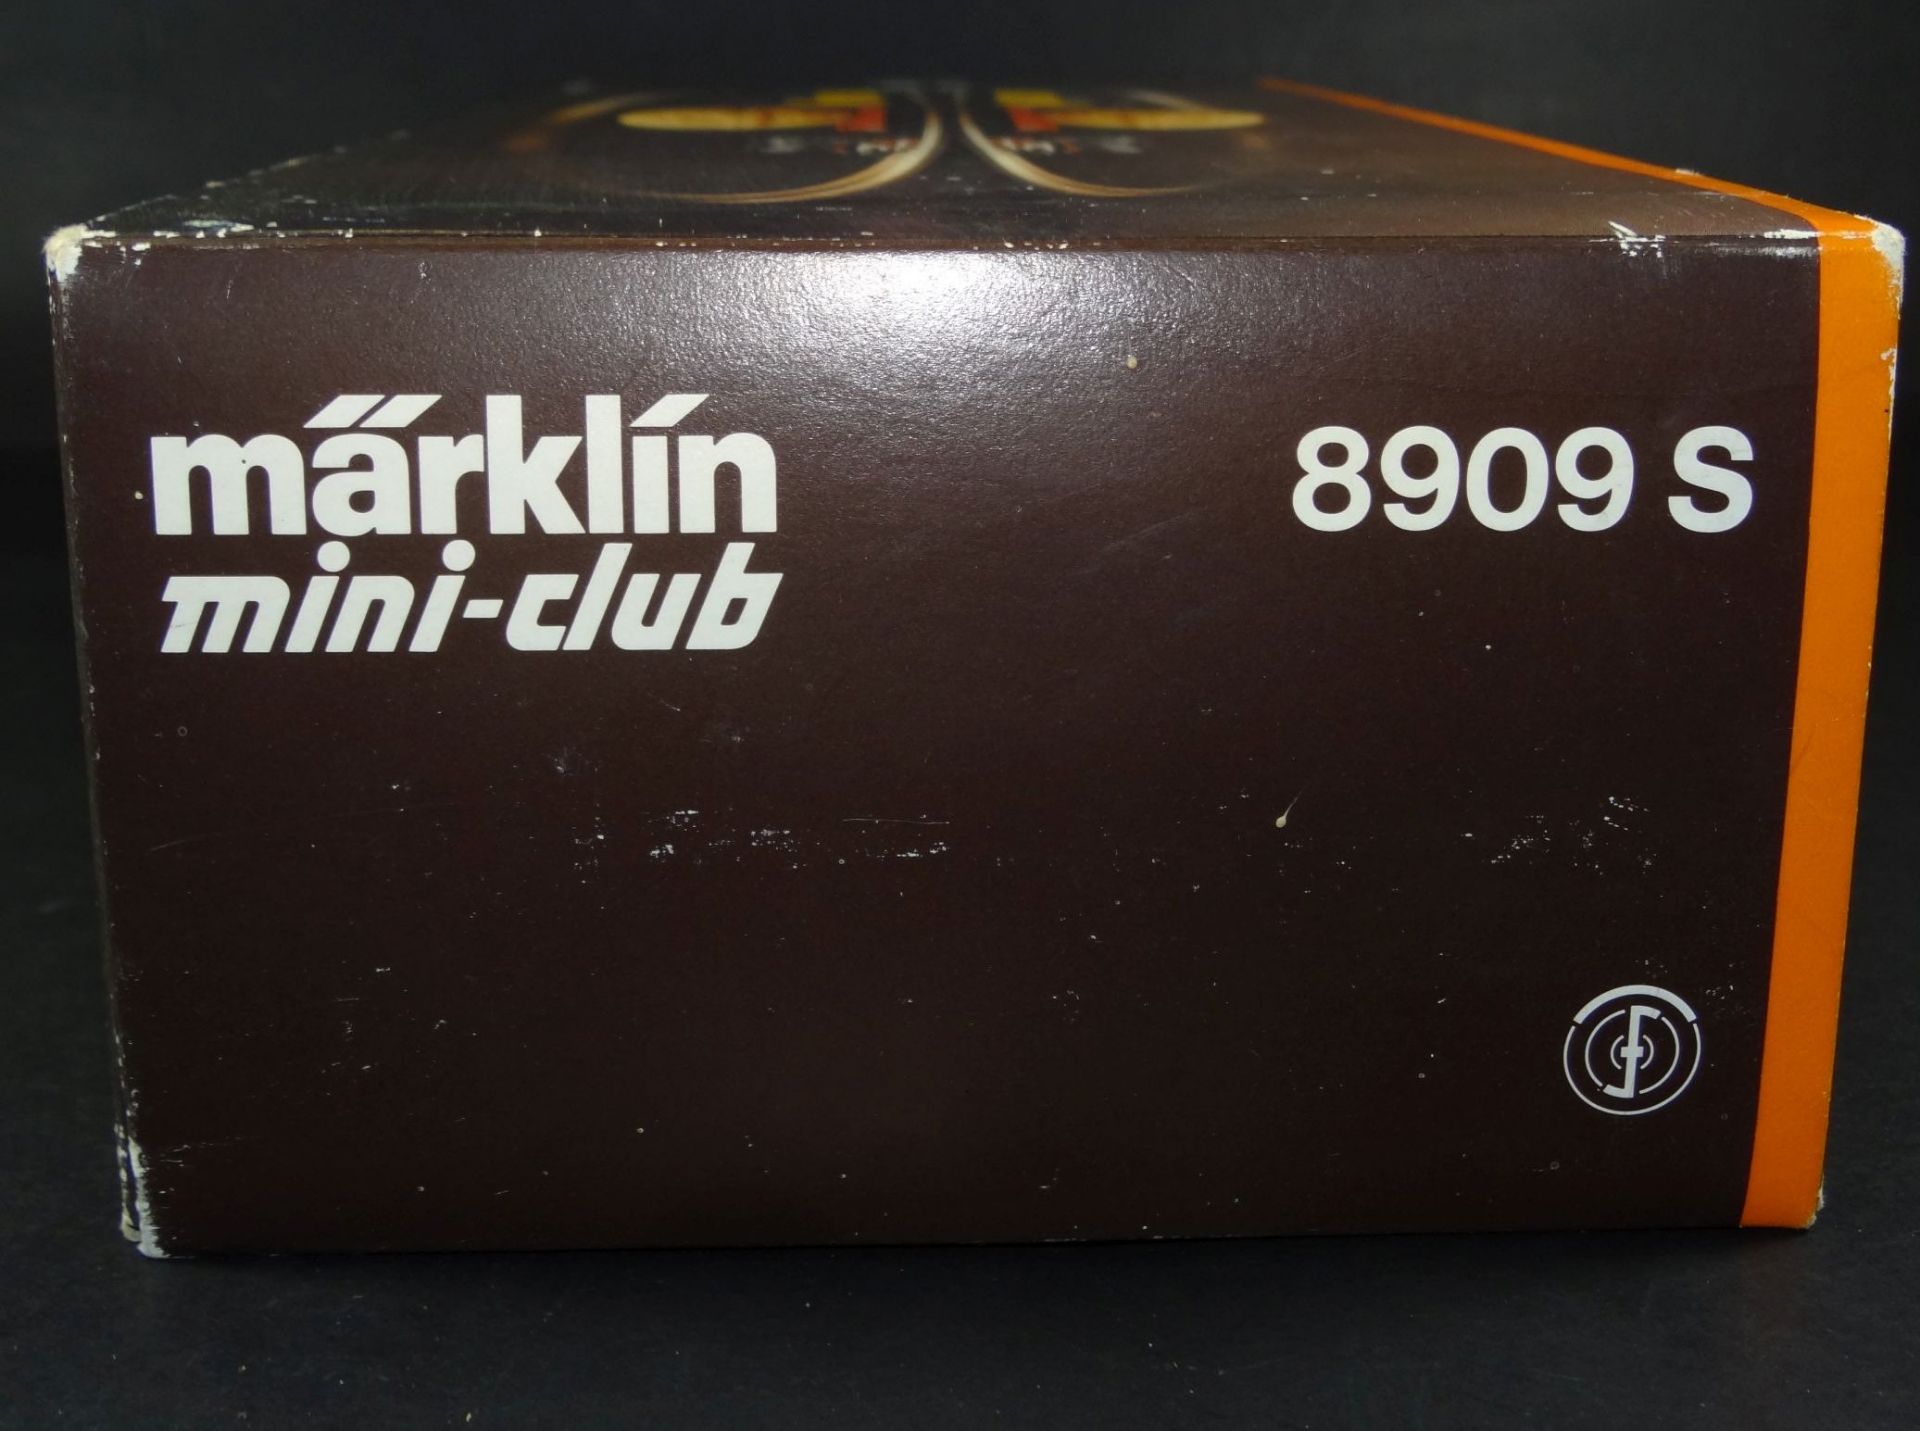 Märklin miniclub Start Set S 8909 original Startset aus den 70ern, sehr wenig bespielt. in OVP- - - - Bild 6 aus 6